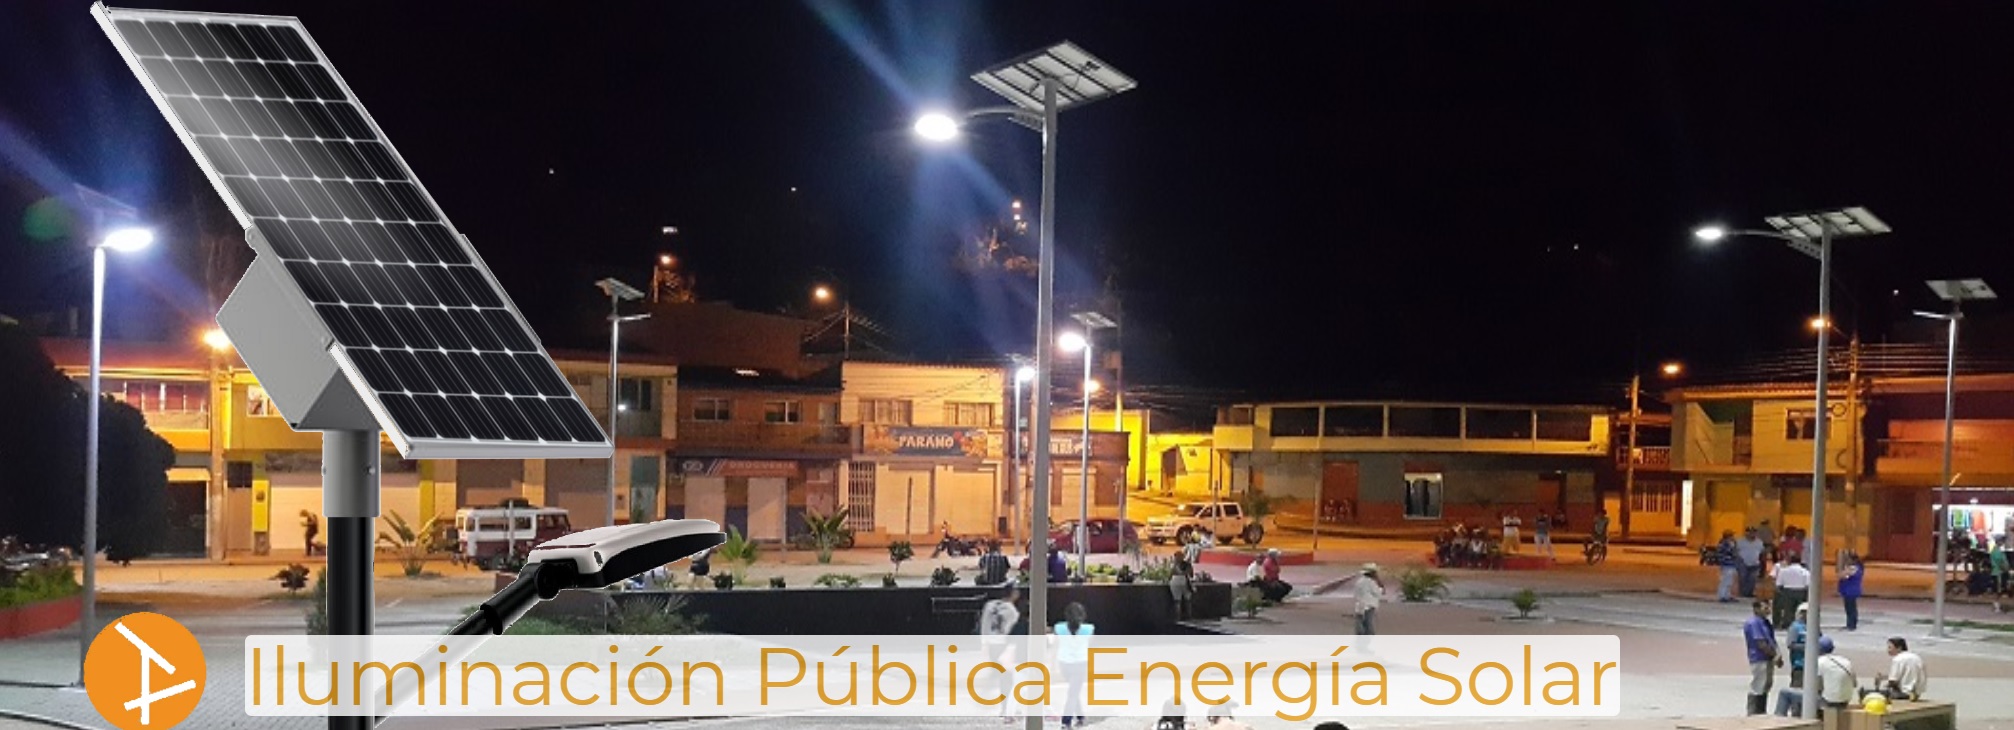 Iluminación Pública sostenible